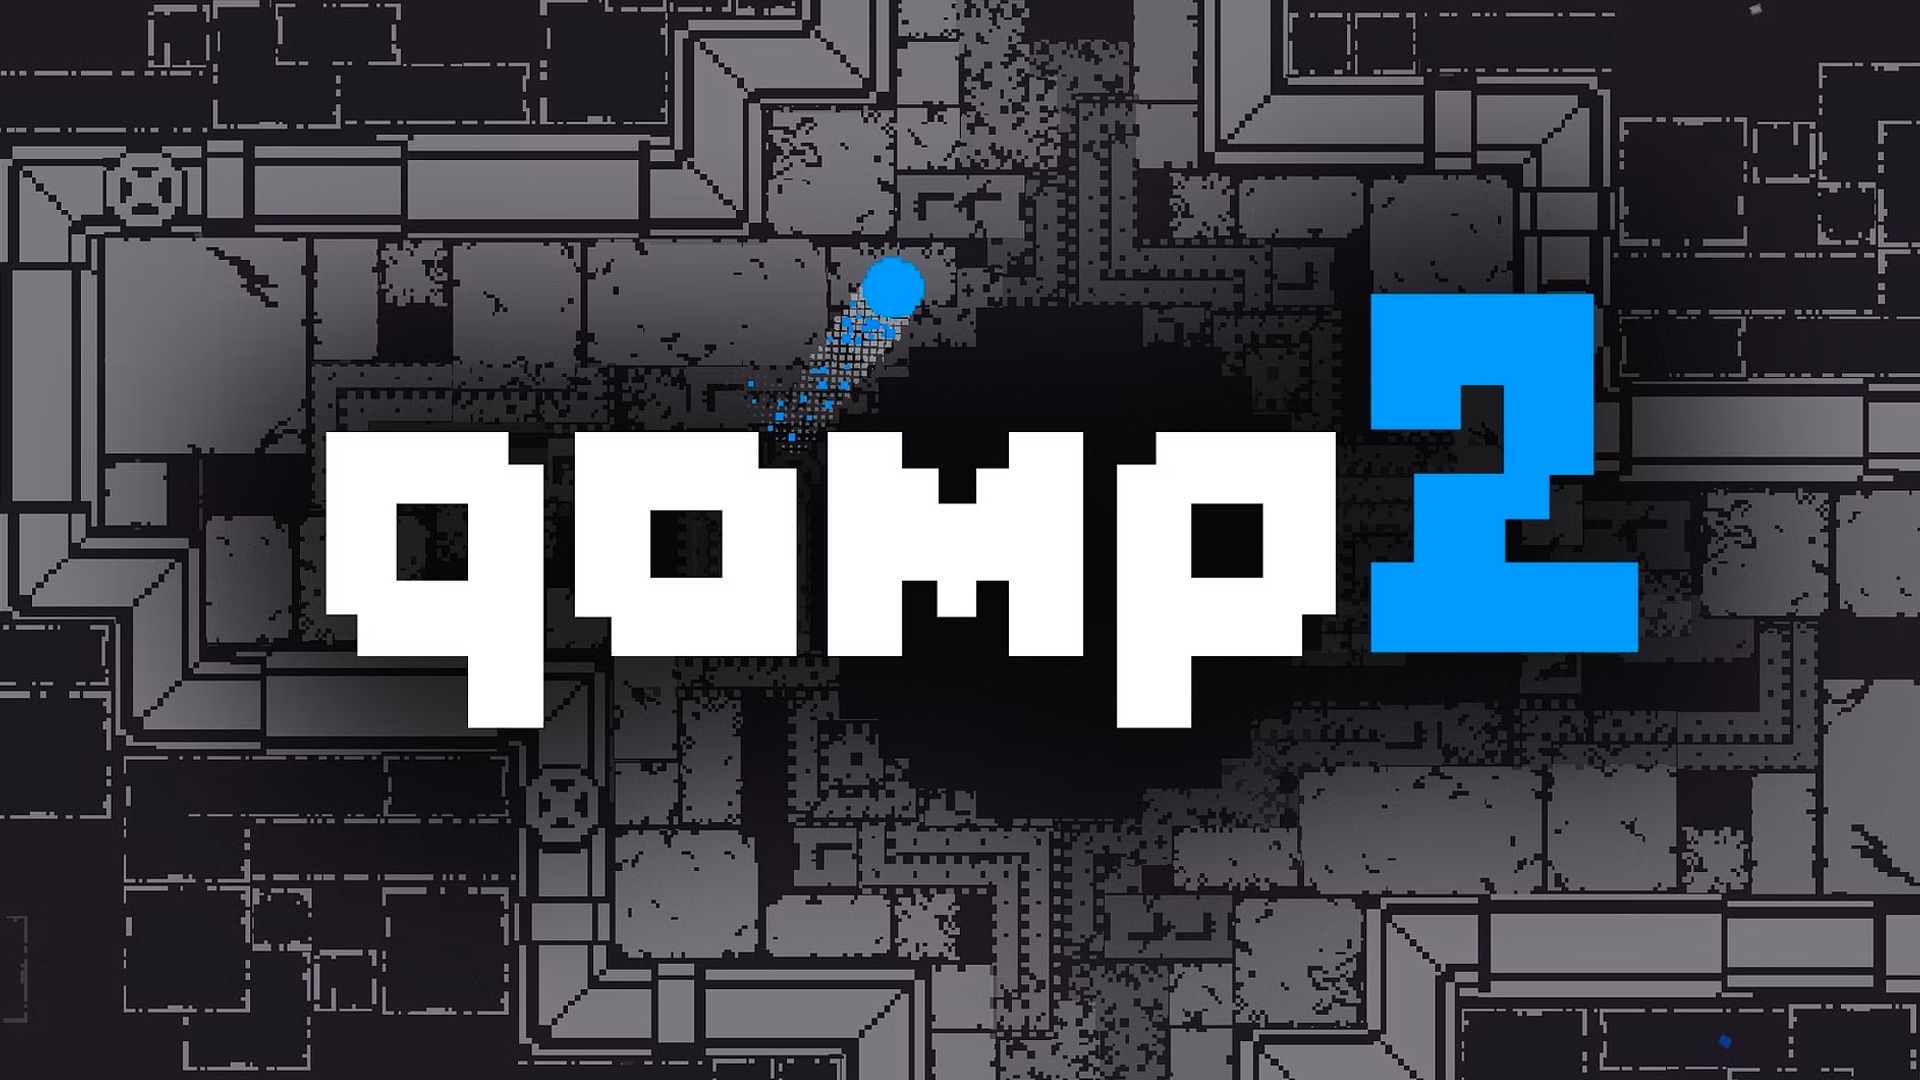 qomp2 PC Version Full Game Setup Free Download